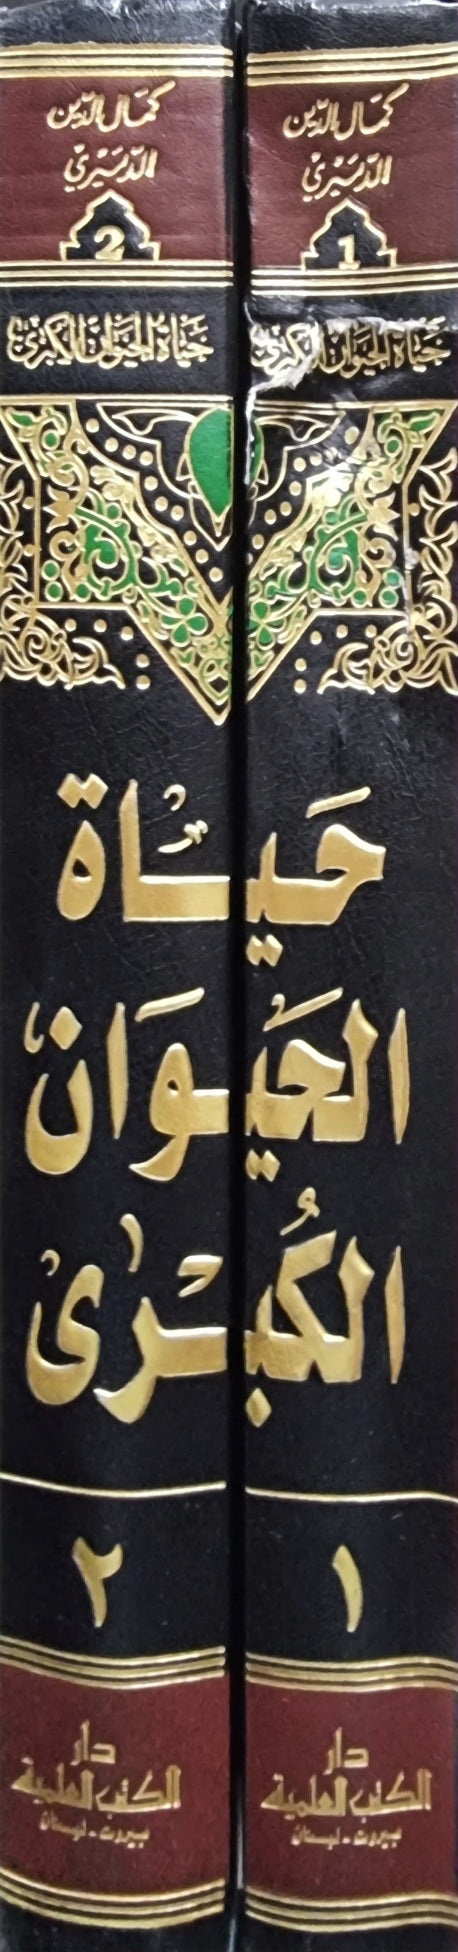 حياة الحيوان الكبرى Hayatul Hayawan Al Kubrah (2 Volume)(DKI) المجلد الاول يوجد فيه تلف بسيط